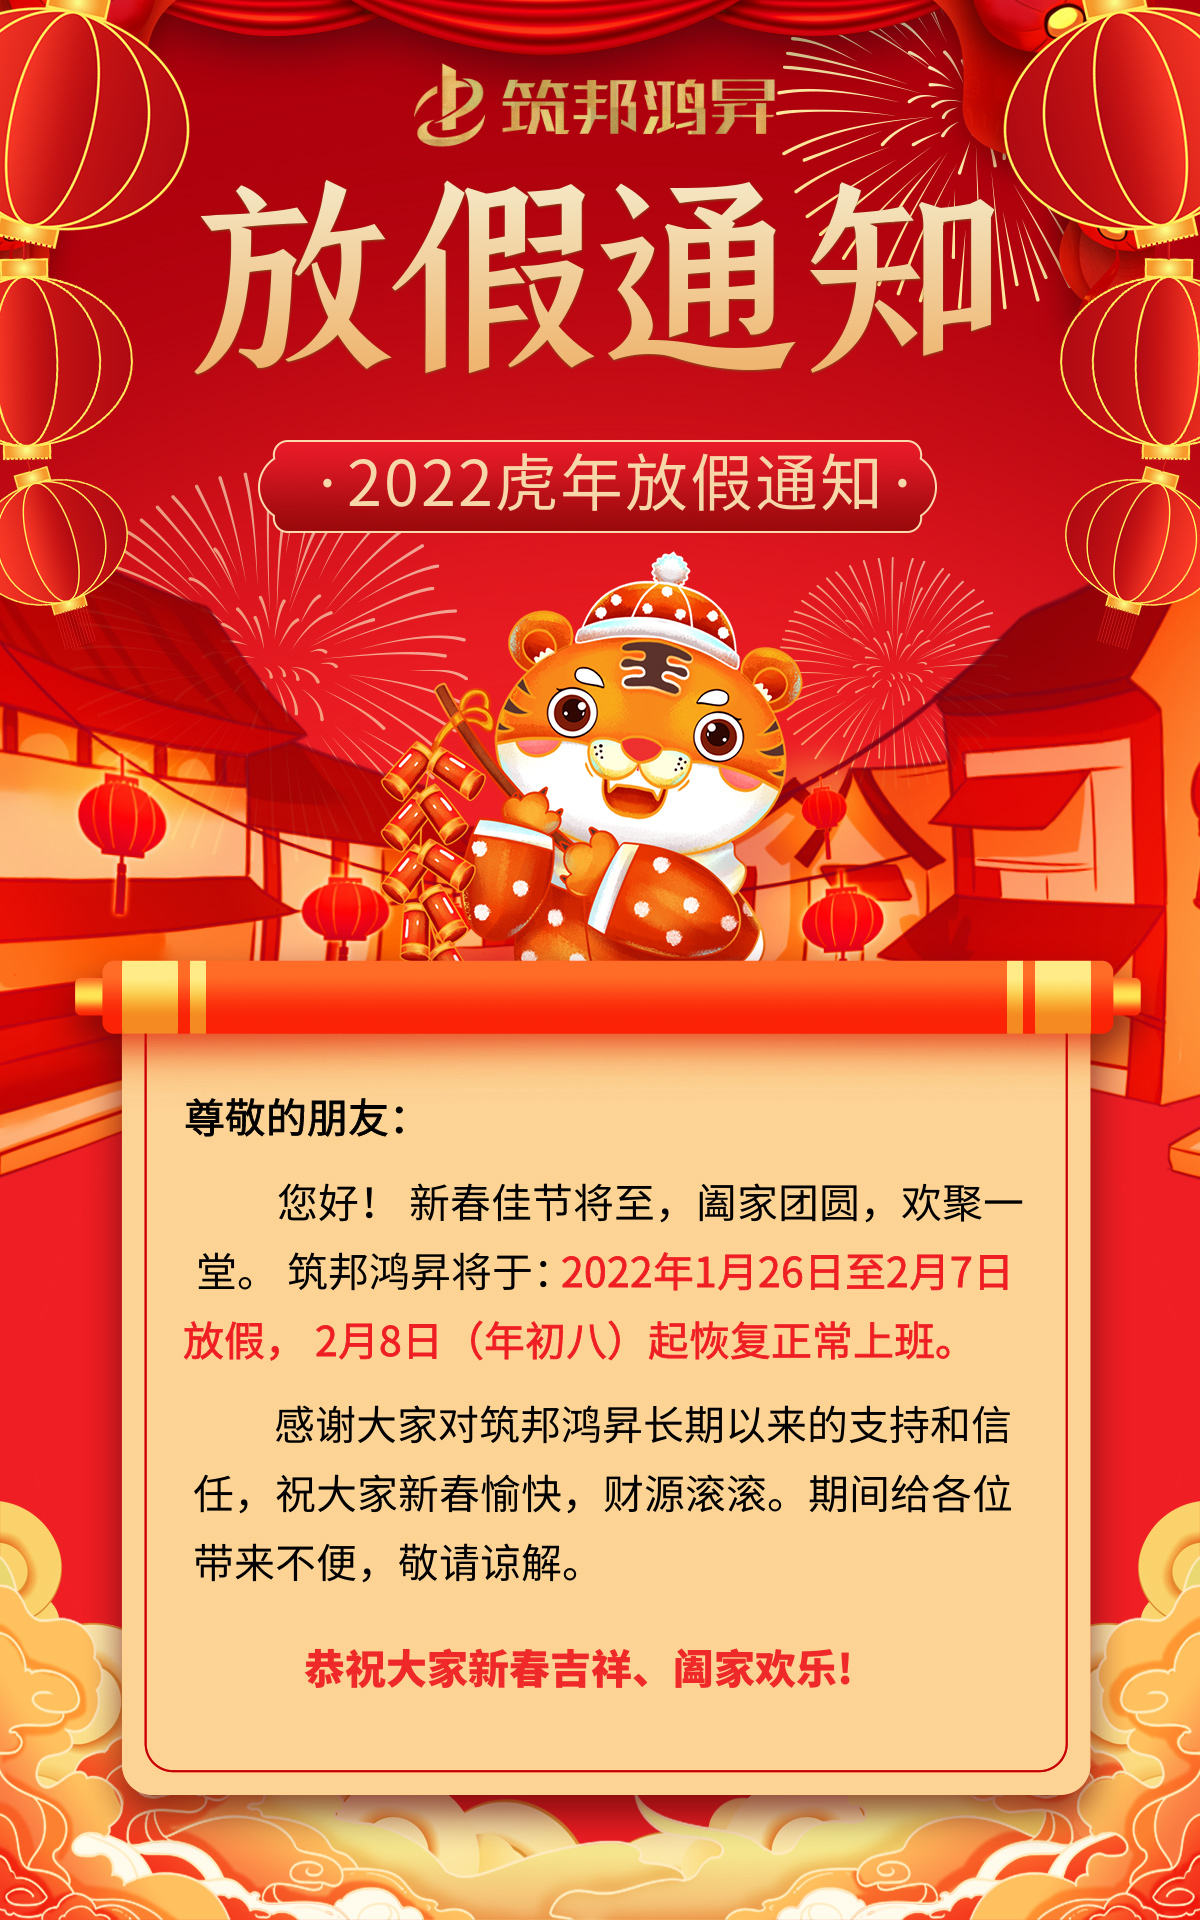 筑邦鸿昇2022虎年春节放假通知